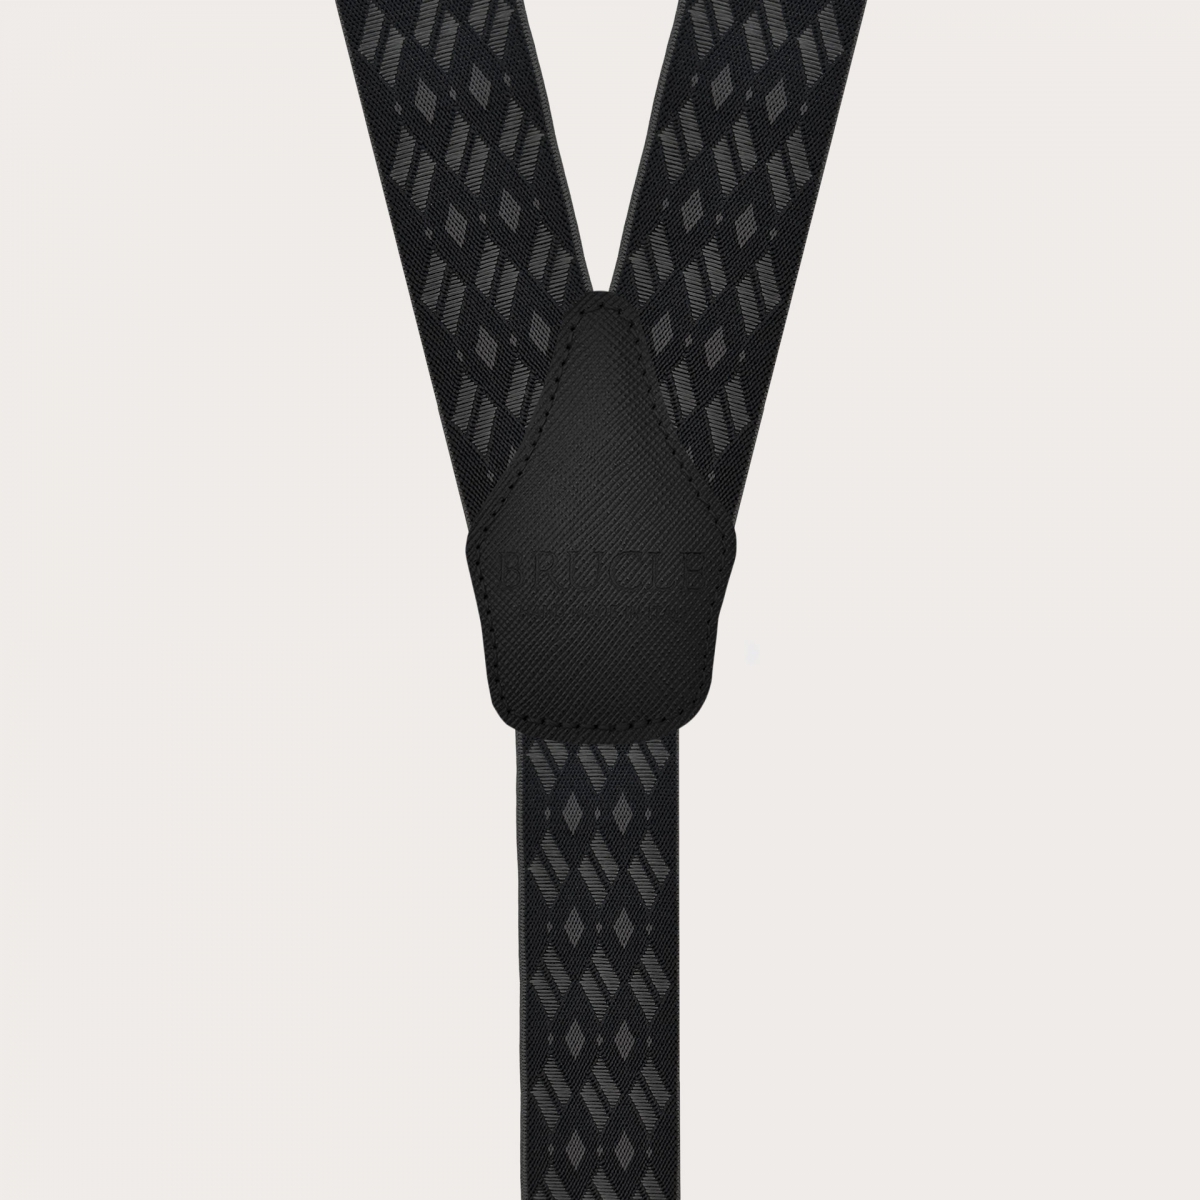 Breite schwarz-graue elastische Hosenträger mit Rautenmuster